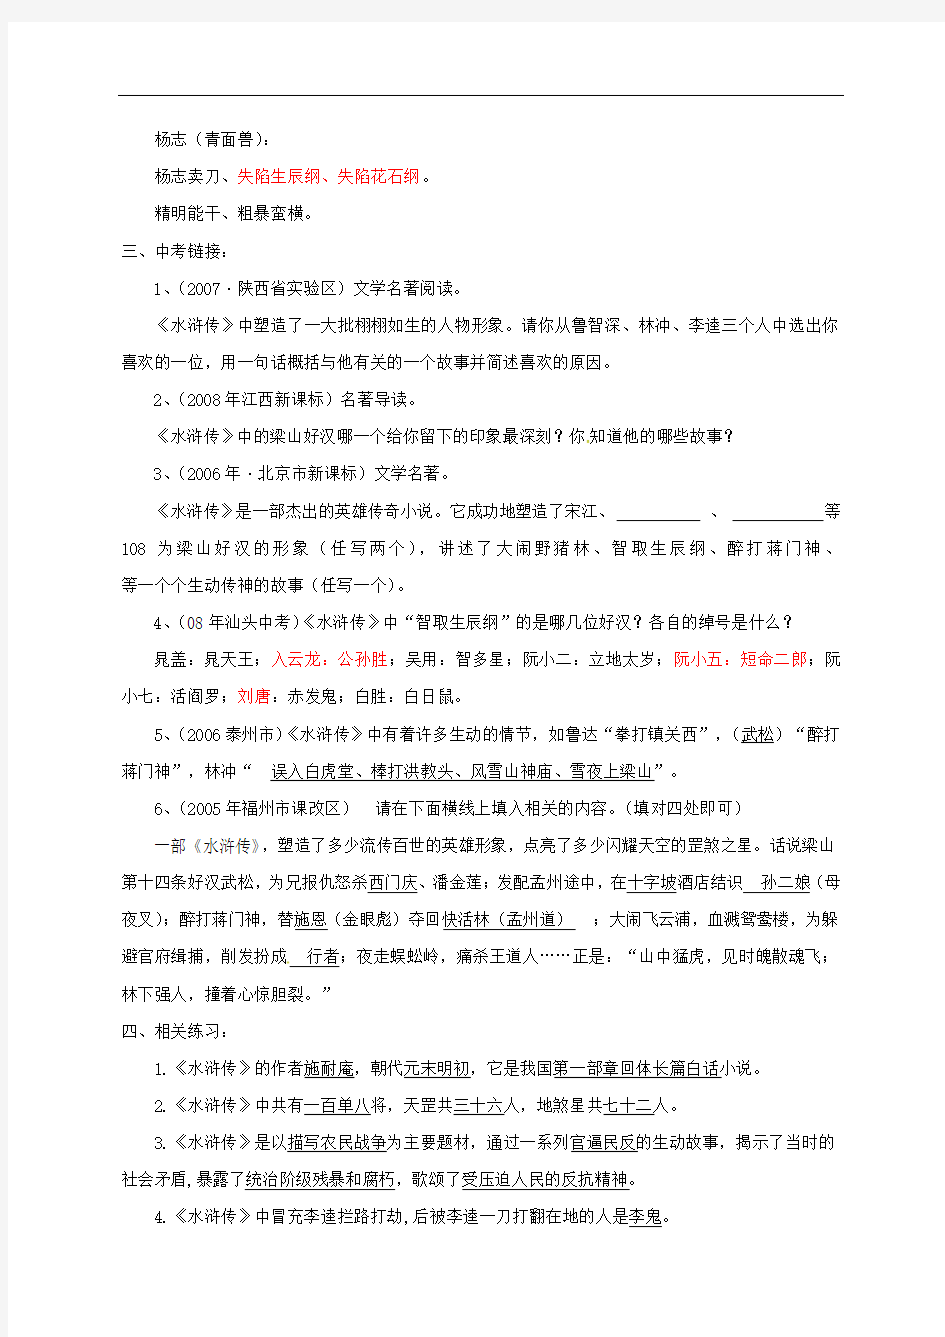 【人教版】初中语文下册名著导读(10)《水浒》复习素材(含答案)